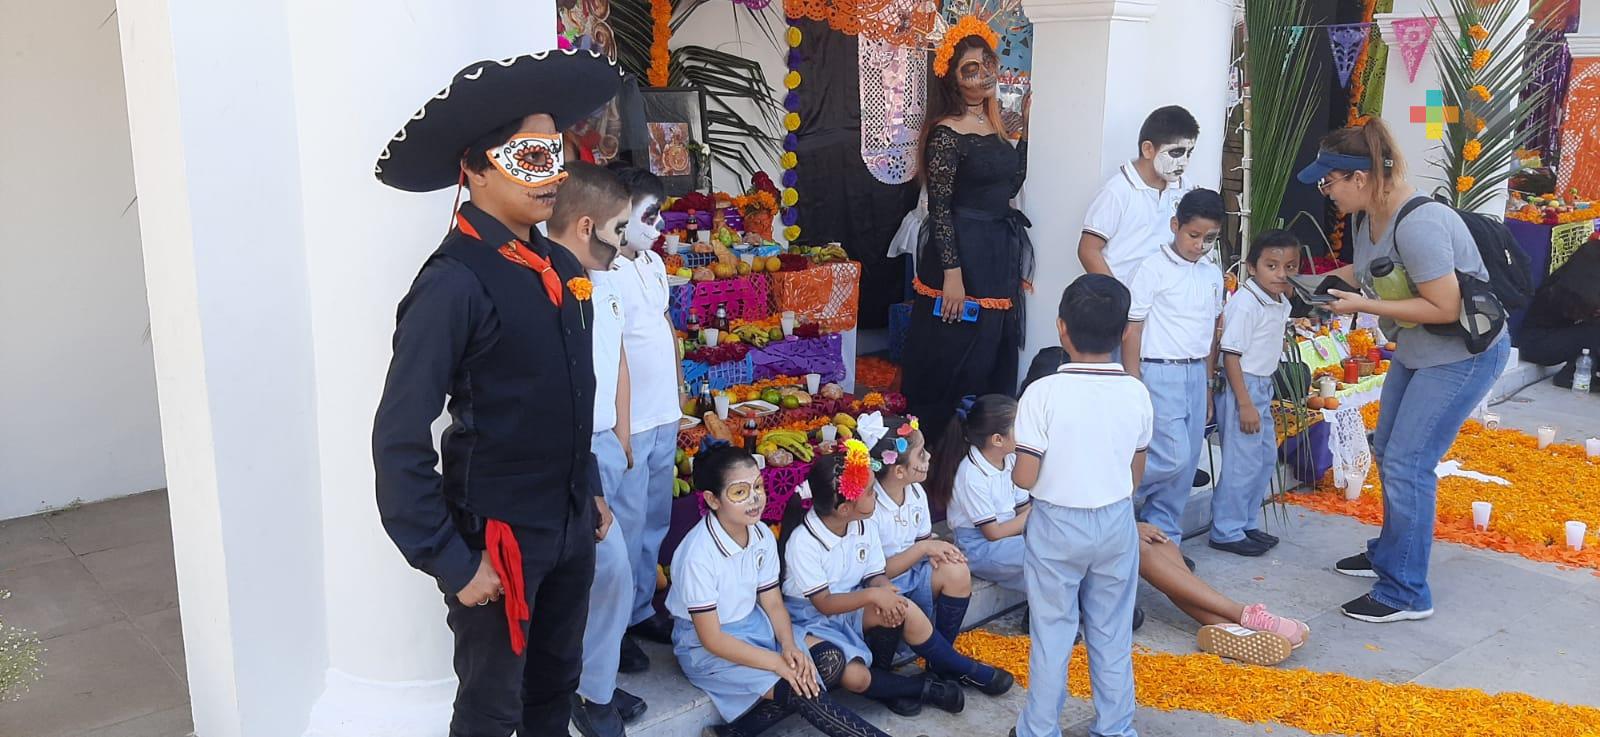 Escuelas de Boca del Río participaron en exposición de altares de muertos